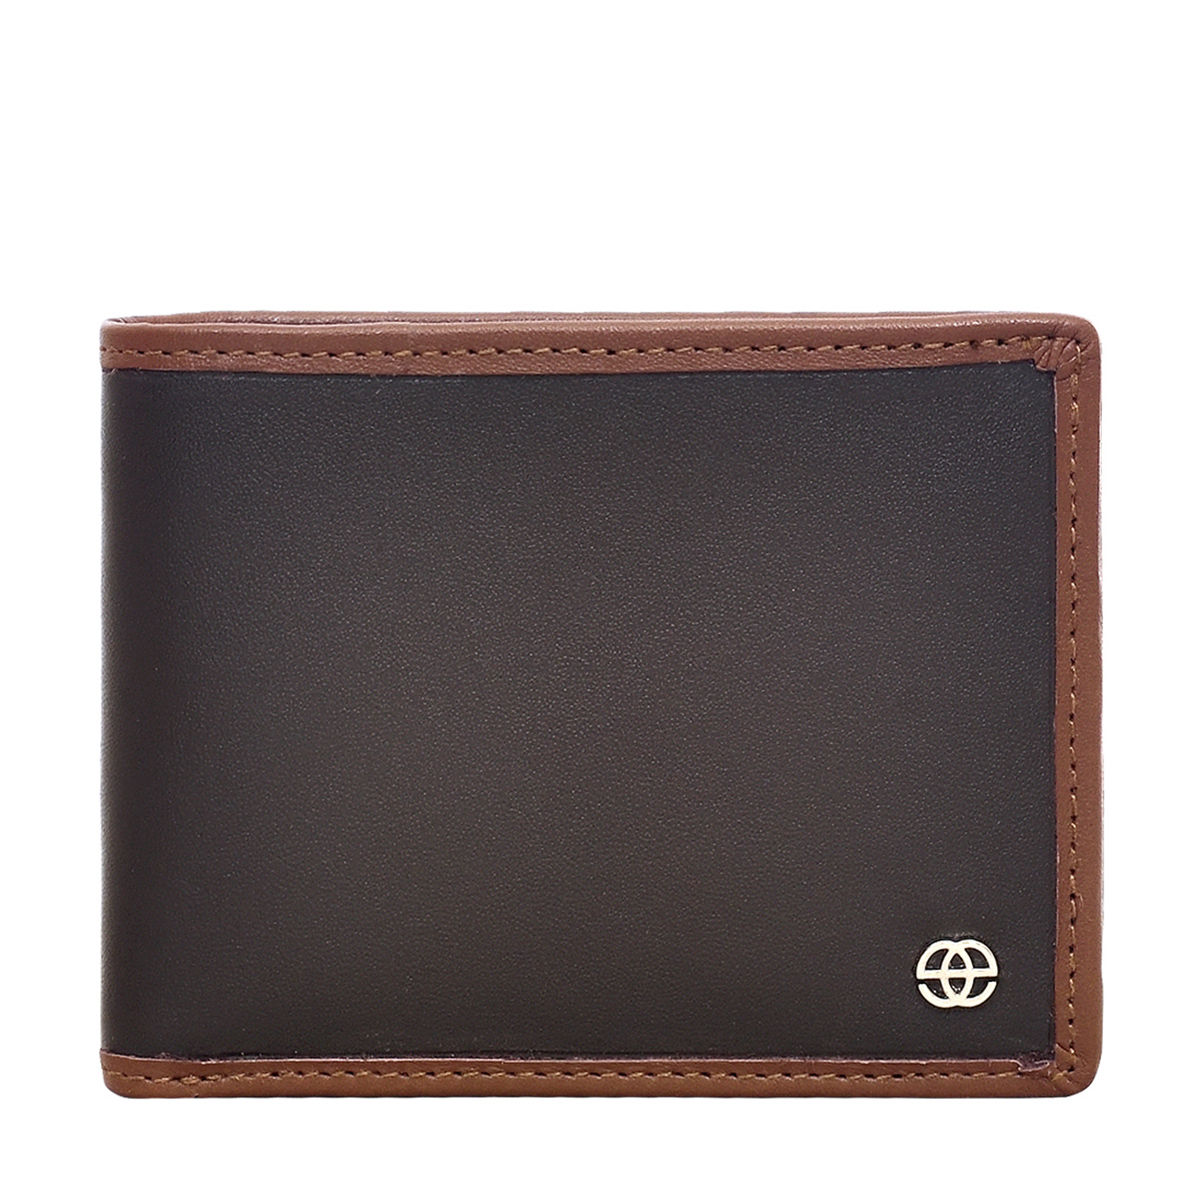 Eske Paris Kim Two Fold Genuine Leather Wallet For Men, Tan Brown